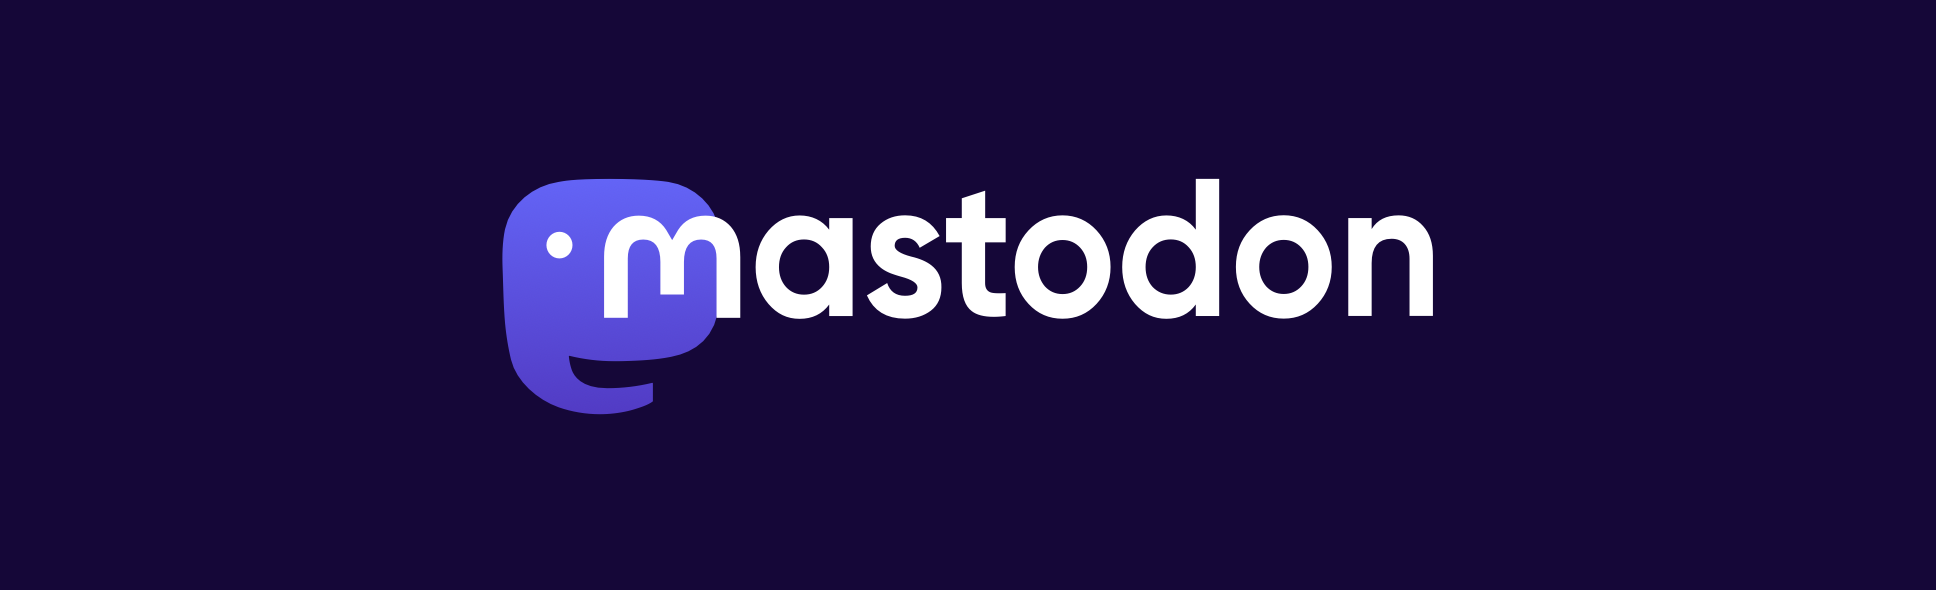 mastodon official logo